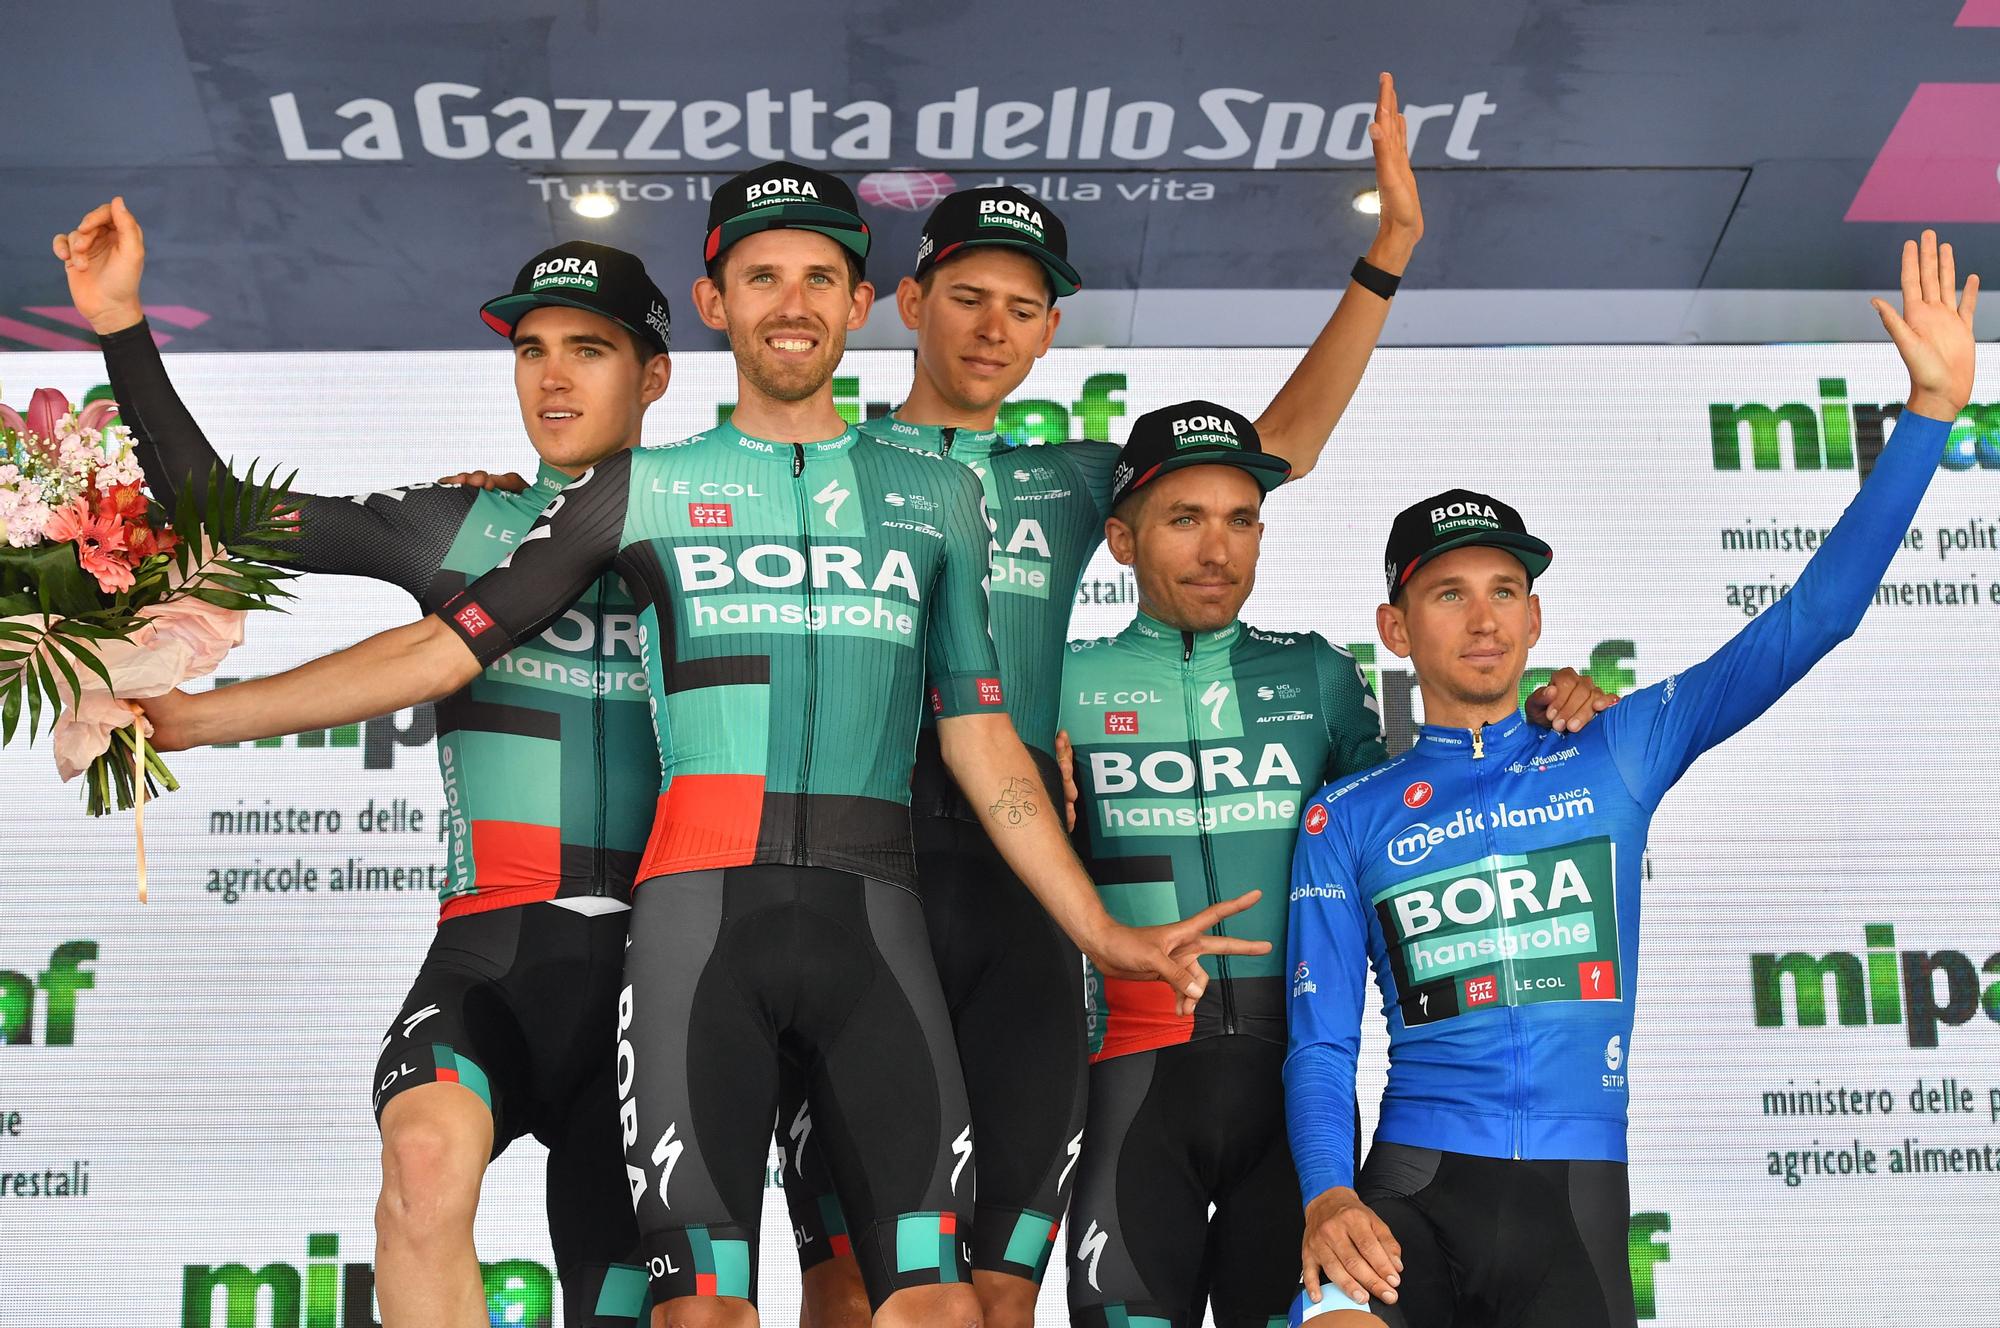 Giro d'Italia - Stage 5 - Catania to Messina